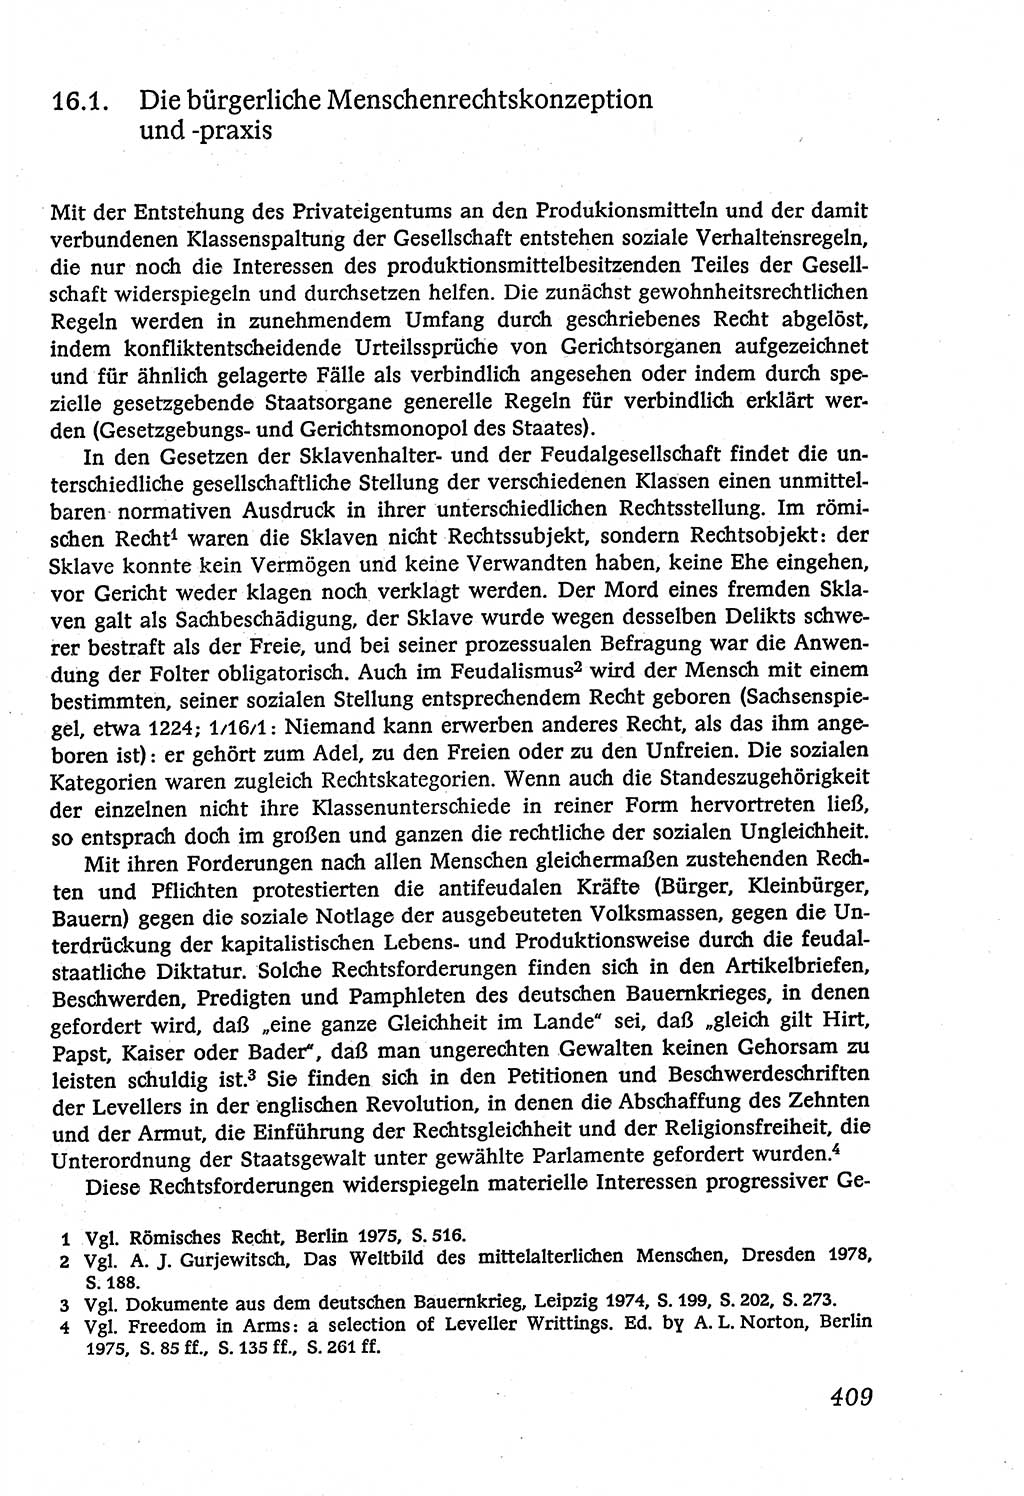 Marxistisch-leninistische (ML) Staats- und Rechtstheorie [Deutsche Demokratische Republik (DDR)], Lehrbuch 1980, Seite 409 (ML St.-R.-Th. DDR Lb. 1980, S. 409)